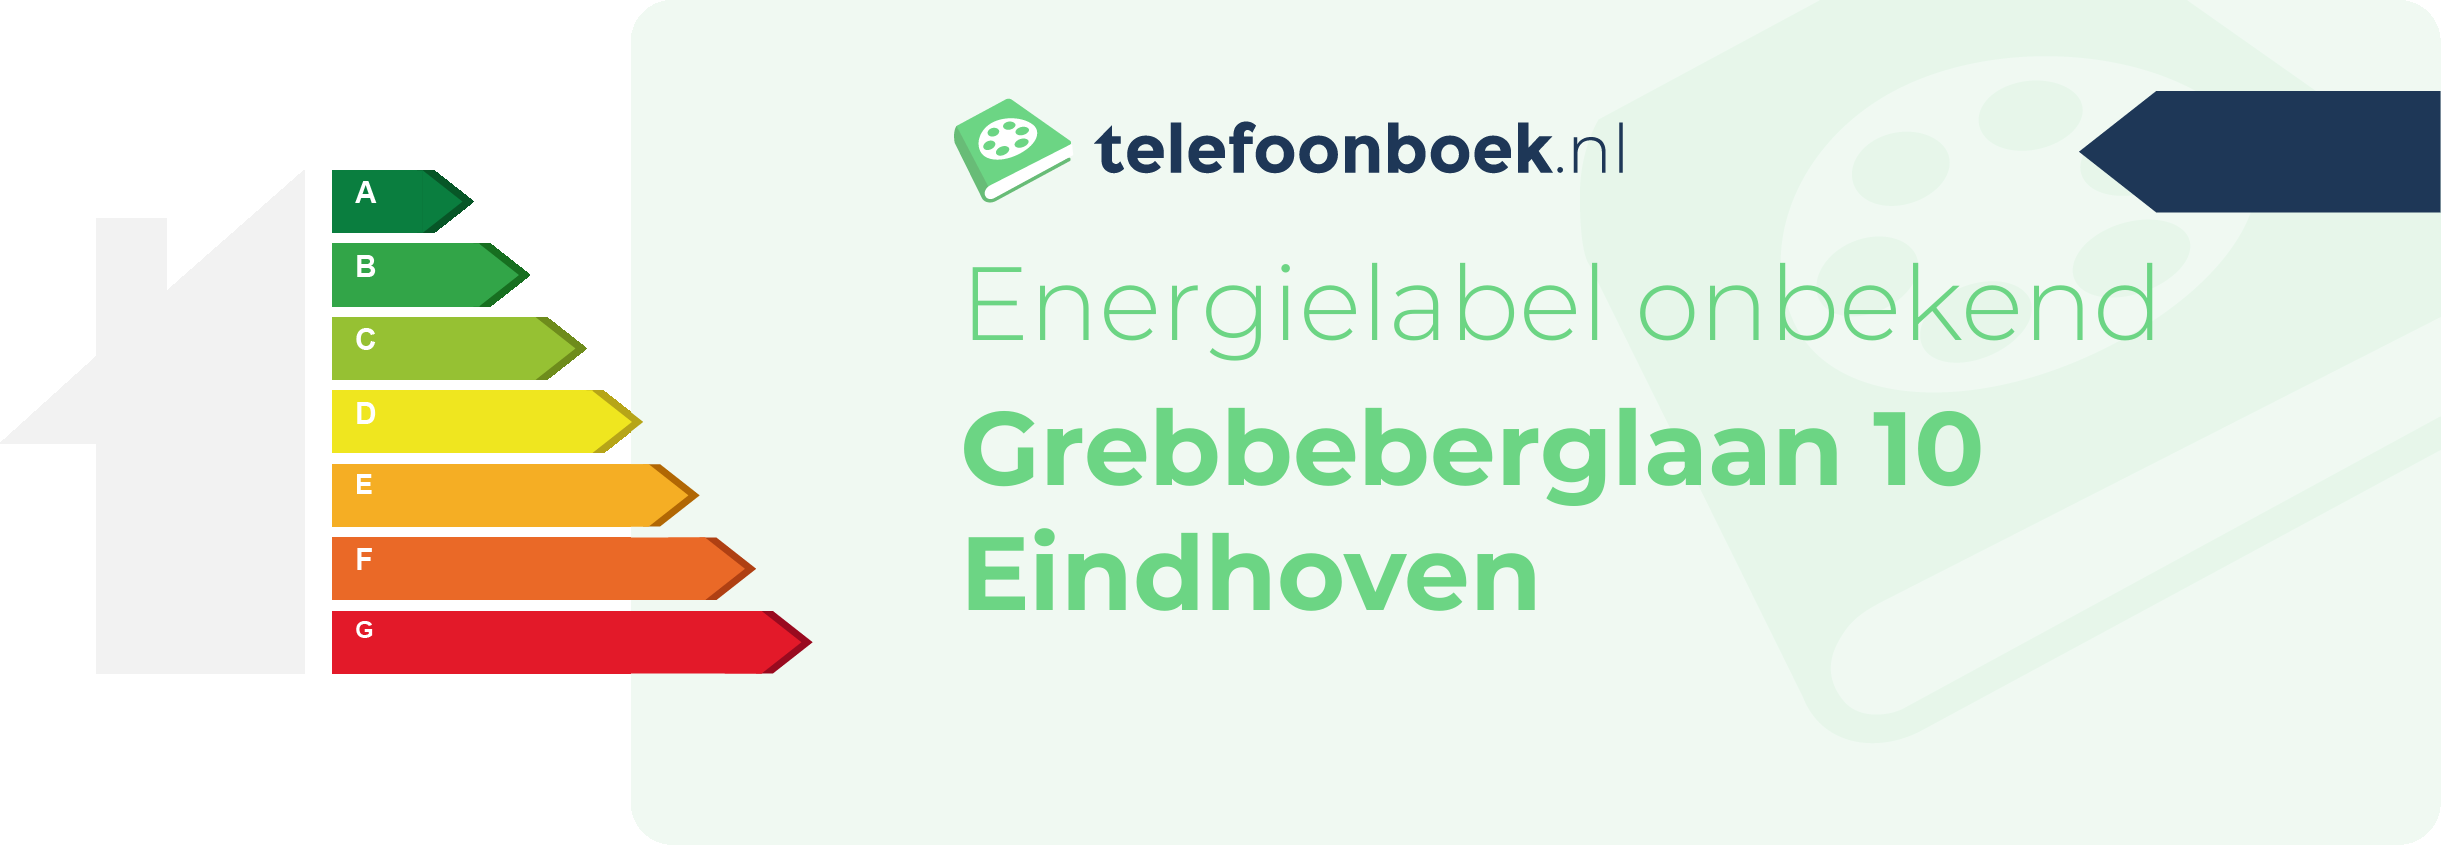 Energielabel Grebbeberglaan 10 Eindhoven